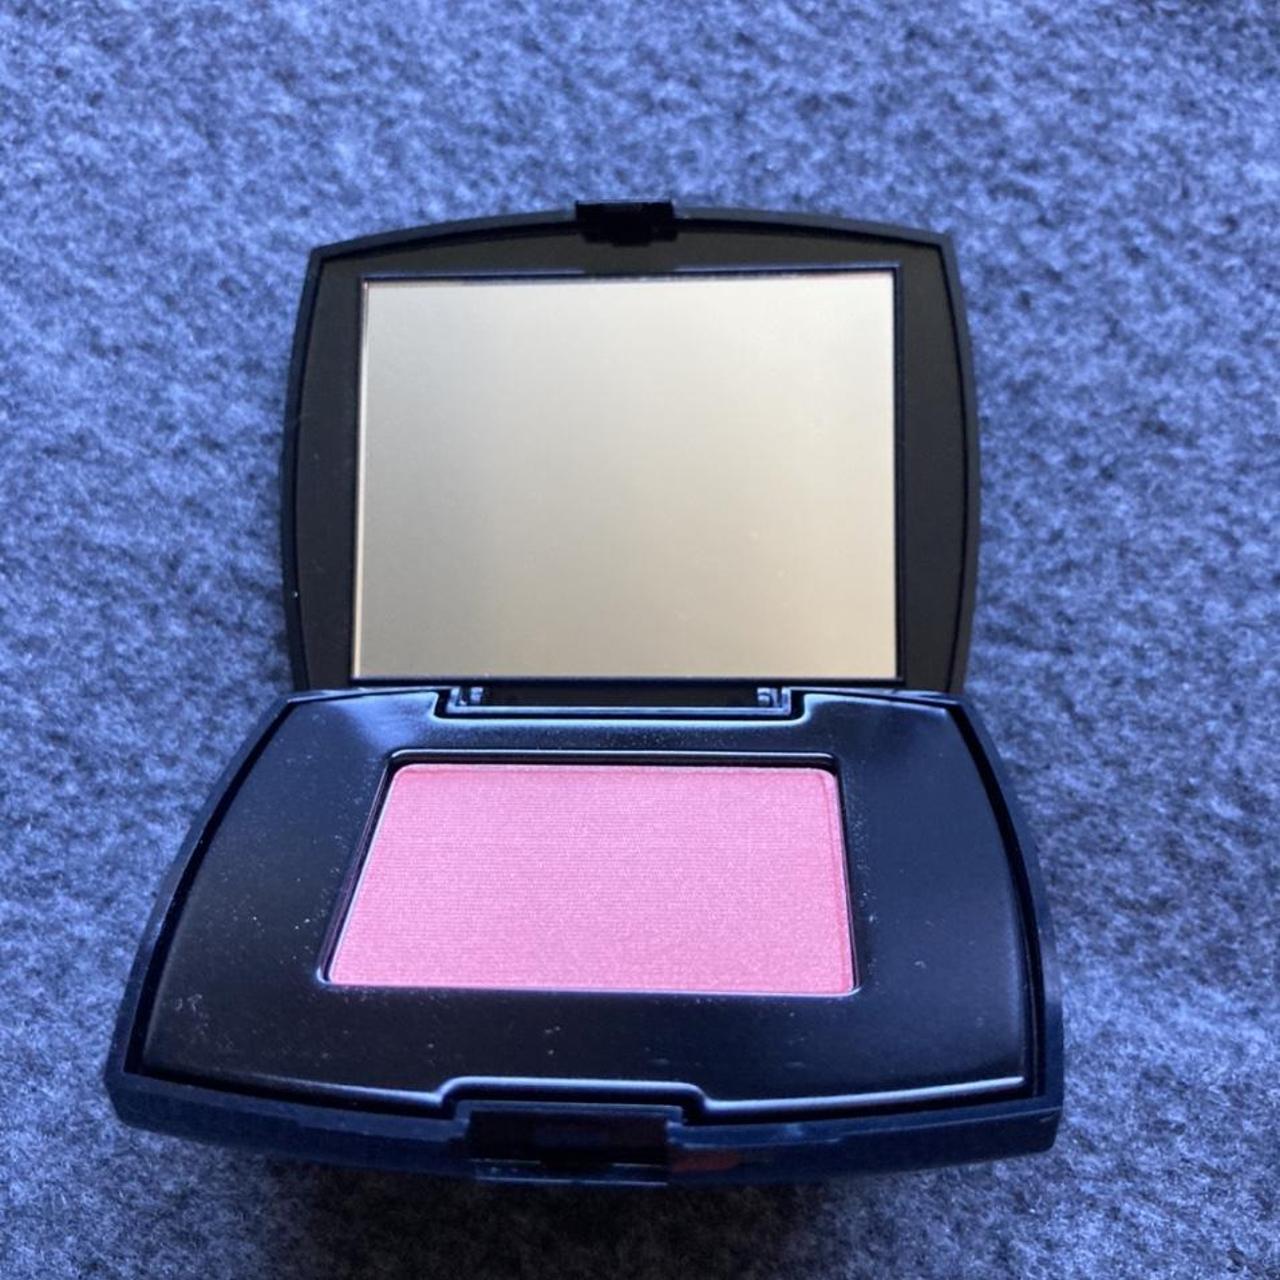 Lancôme Pink and Black Makeup (2)